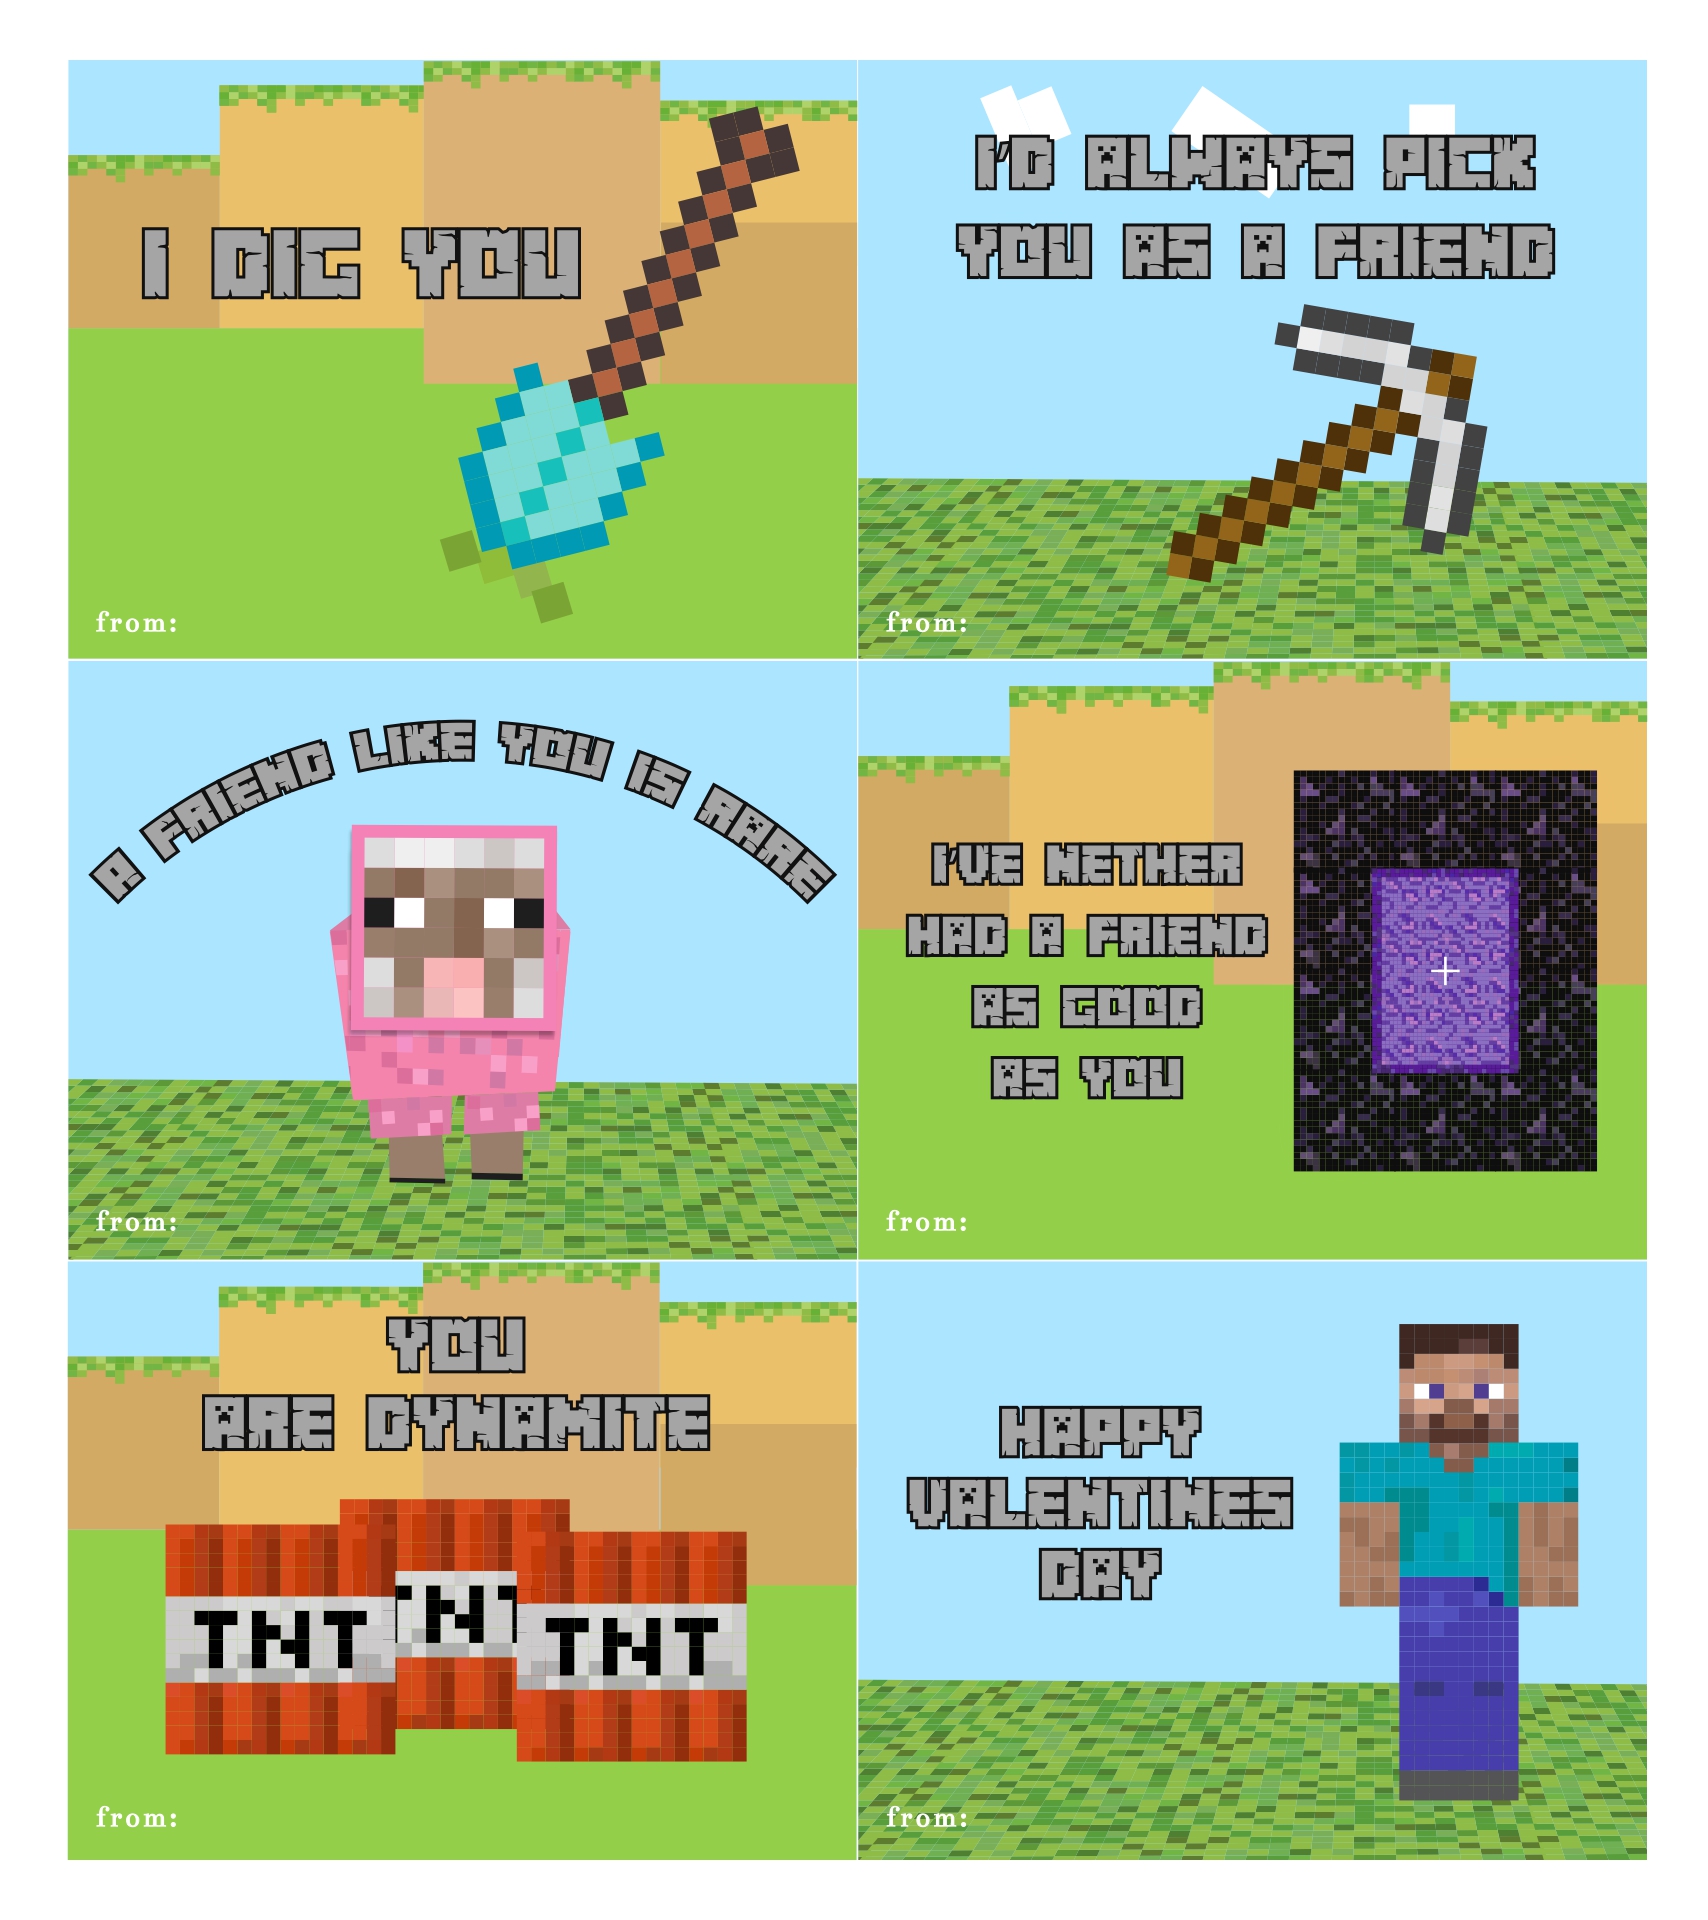 Minecraft Valentines Day Cards